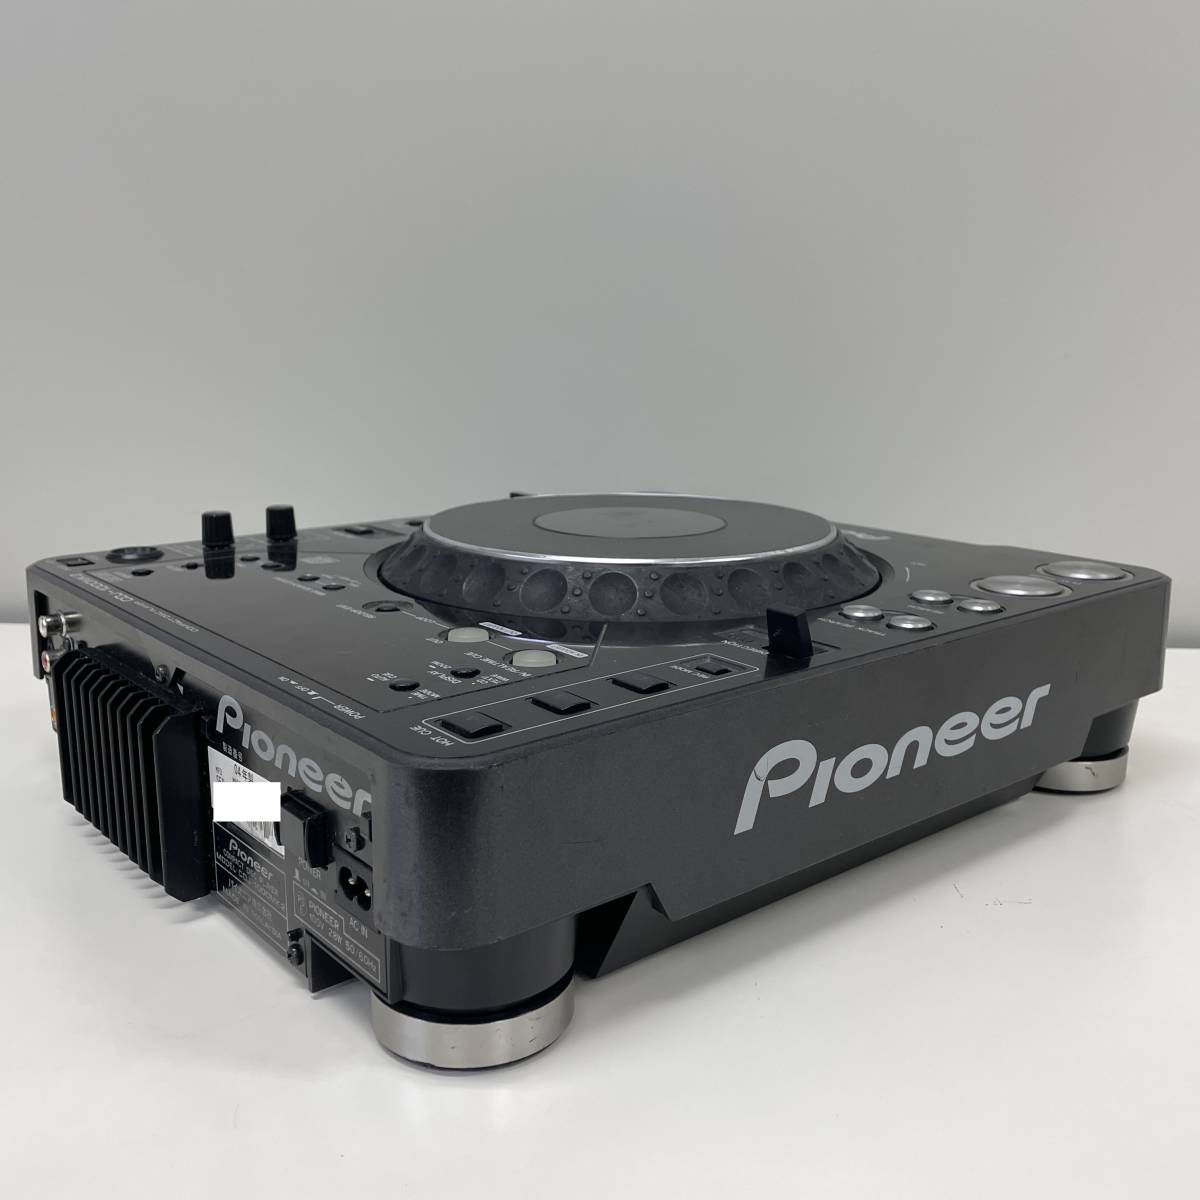 ［動作確認済み］Pioneer パイオニア CDJ-1000MK2 フライトケース付き_画像3